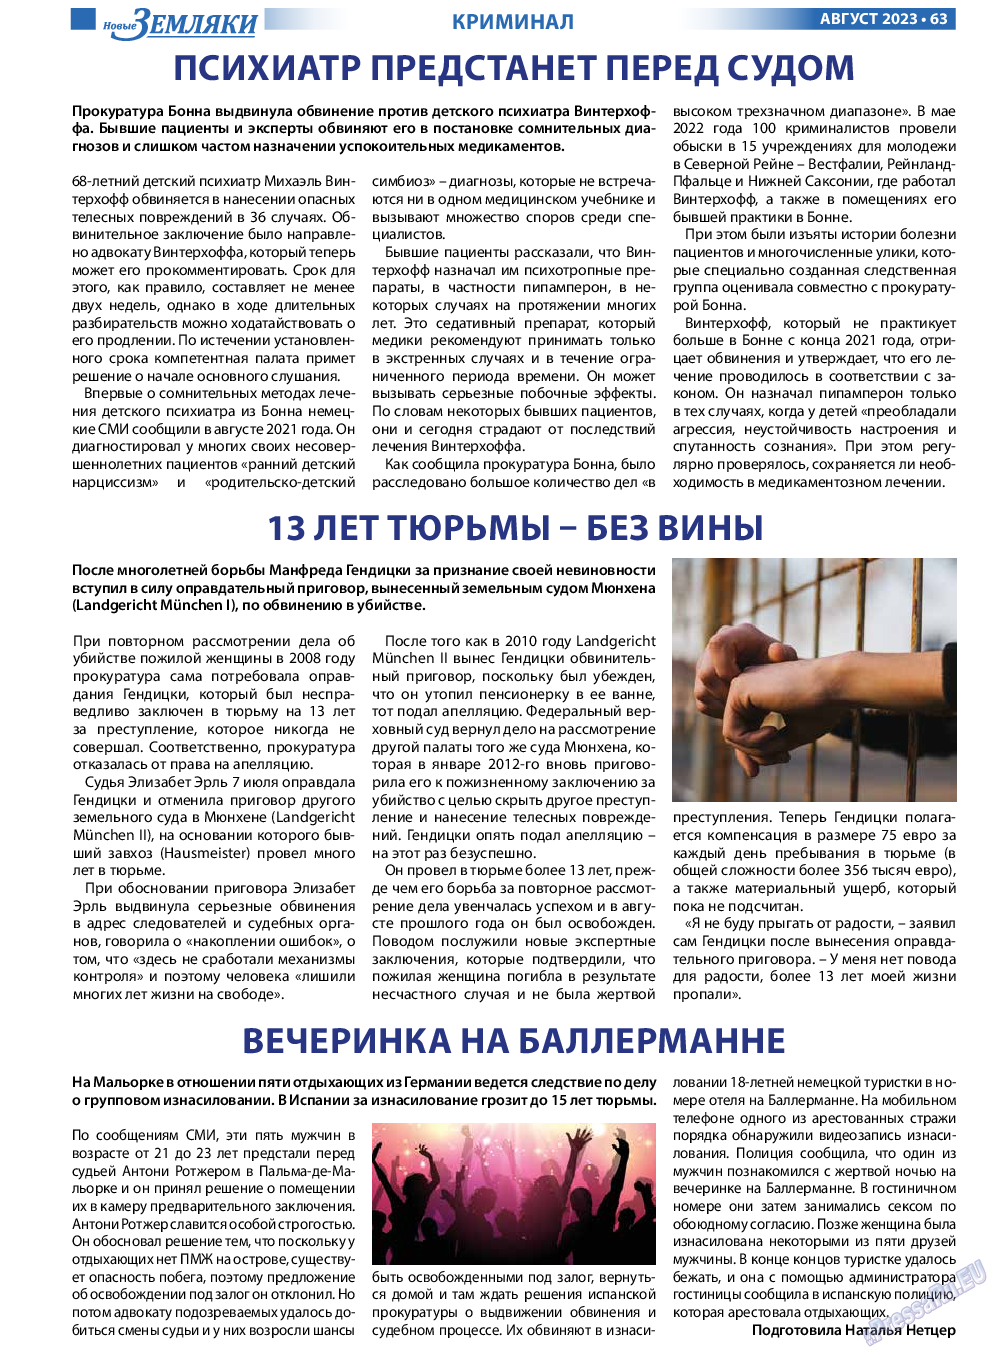 Новые Земляки, газета. 2023 №8 стр.63